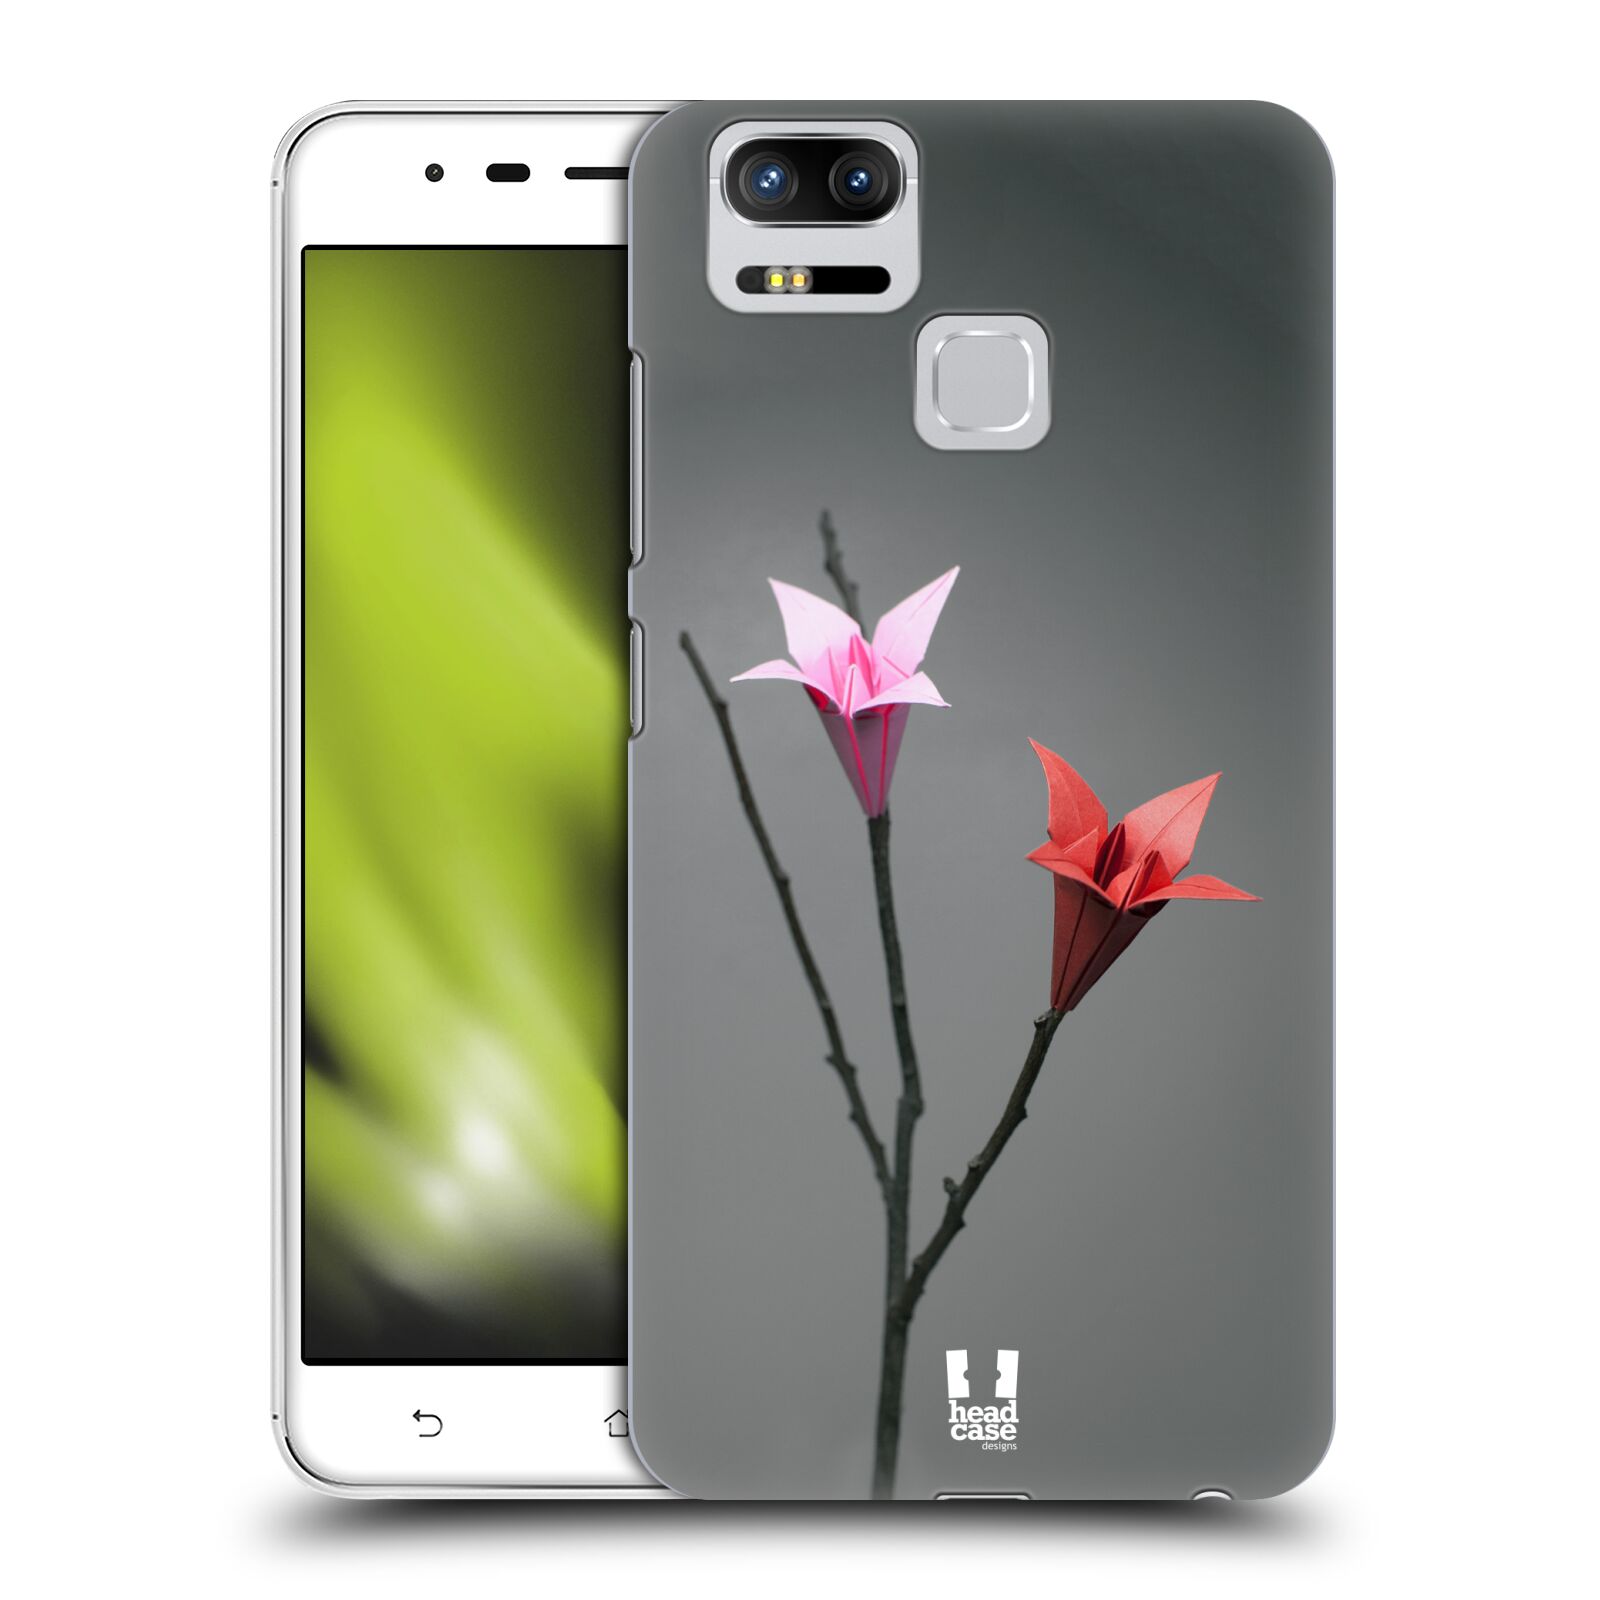 HEAD CASE plastový obal na mobil Asus Zenfone 3 Zoom ZE553KL vzor ORIGAMI KVĚTINA Lilie